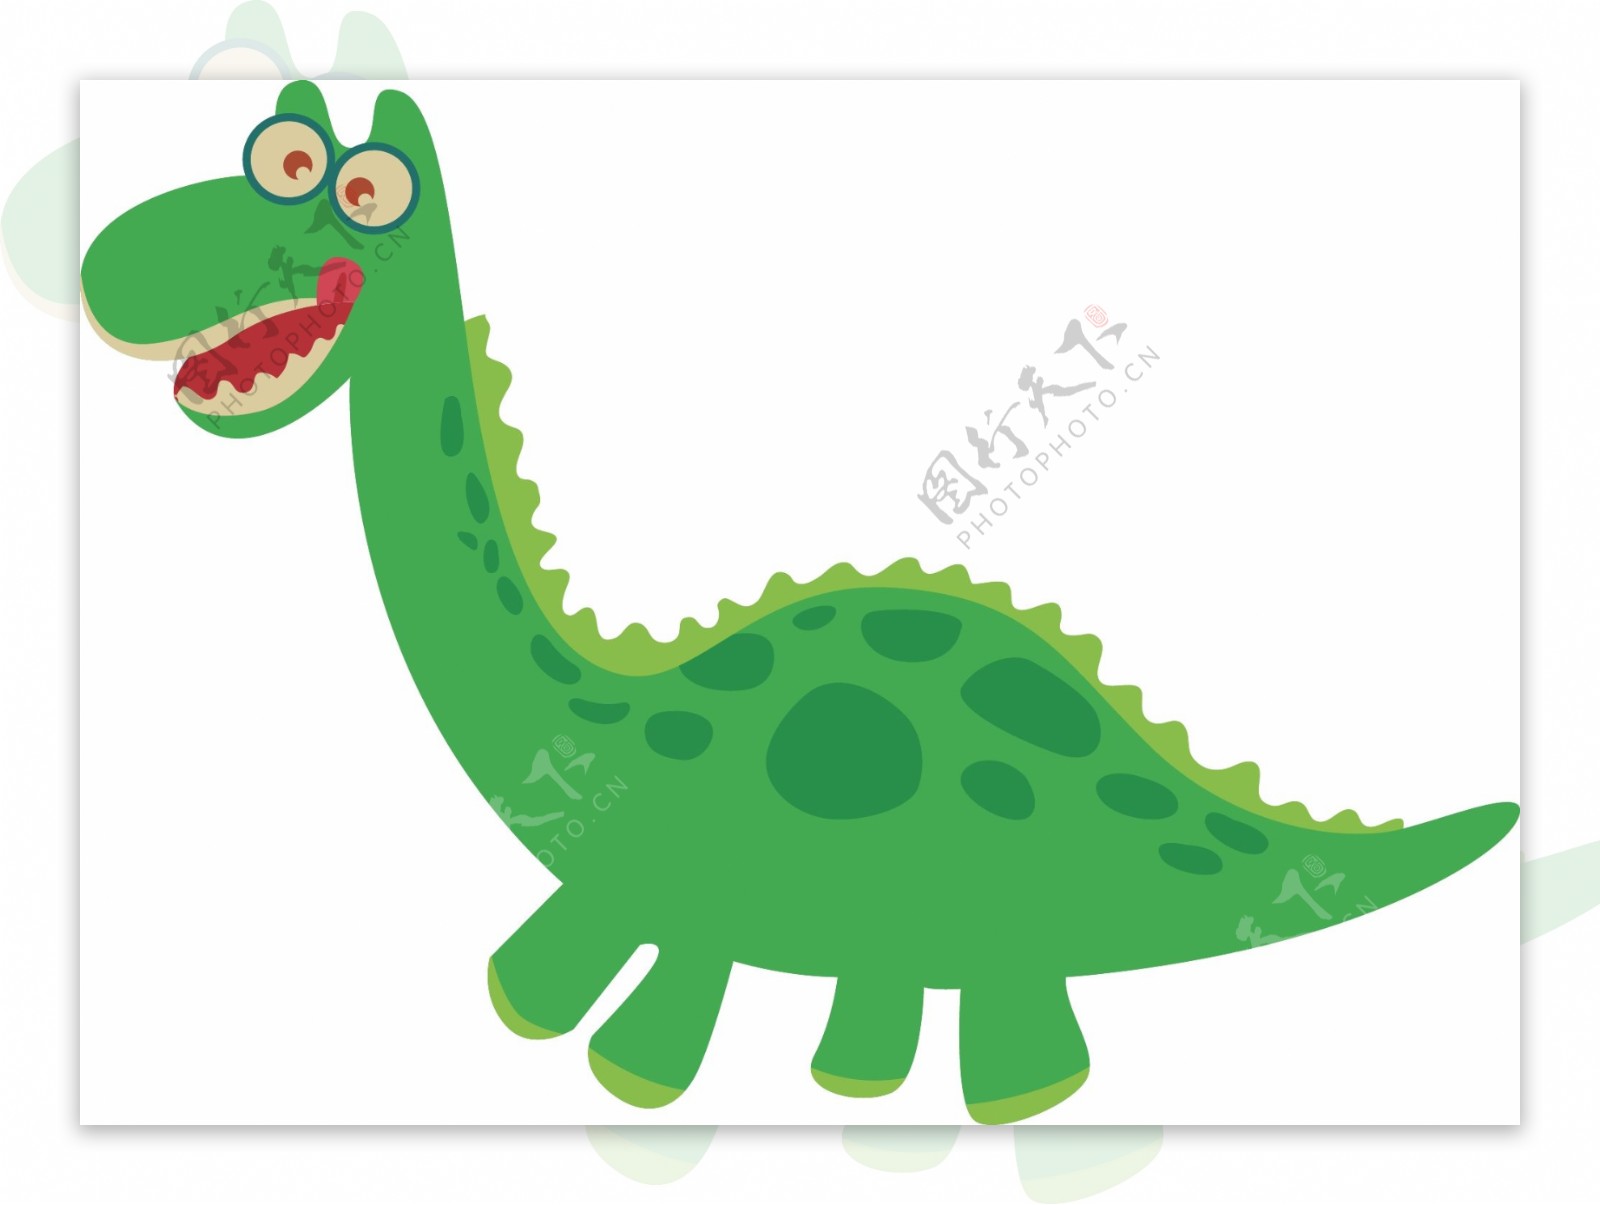 可爱恐龙绿色恐龙